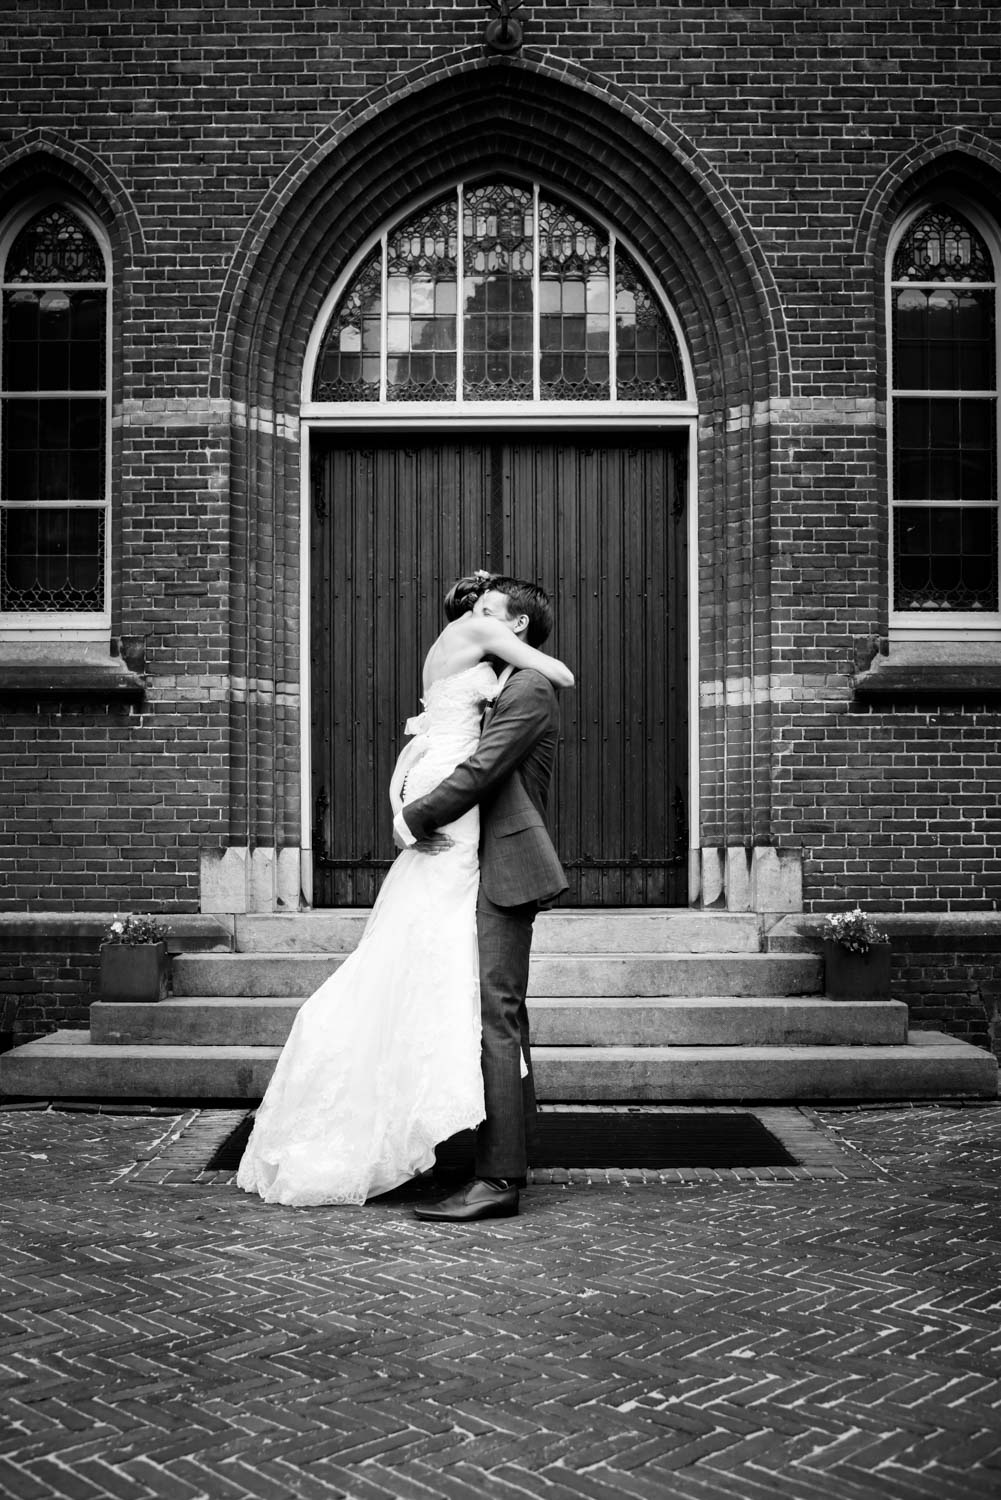 omhelzing van het bruidspaar tijdens de huwelijksfotografie